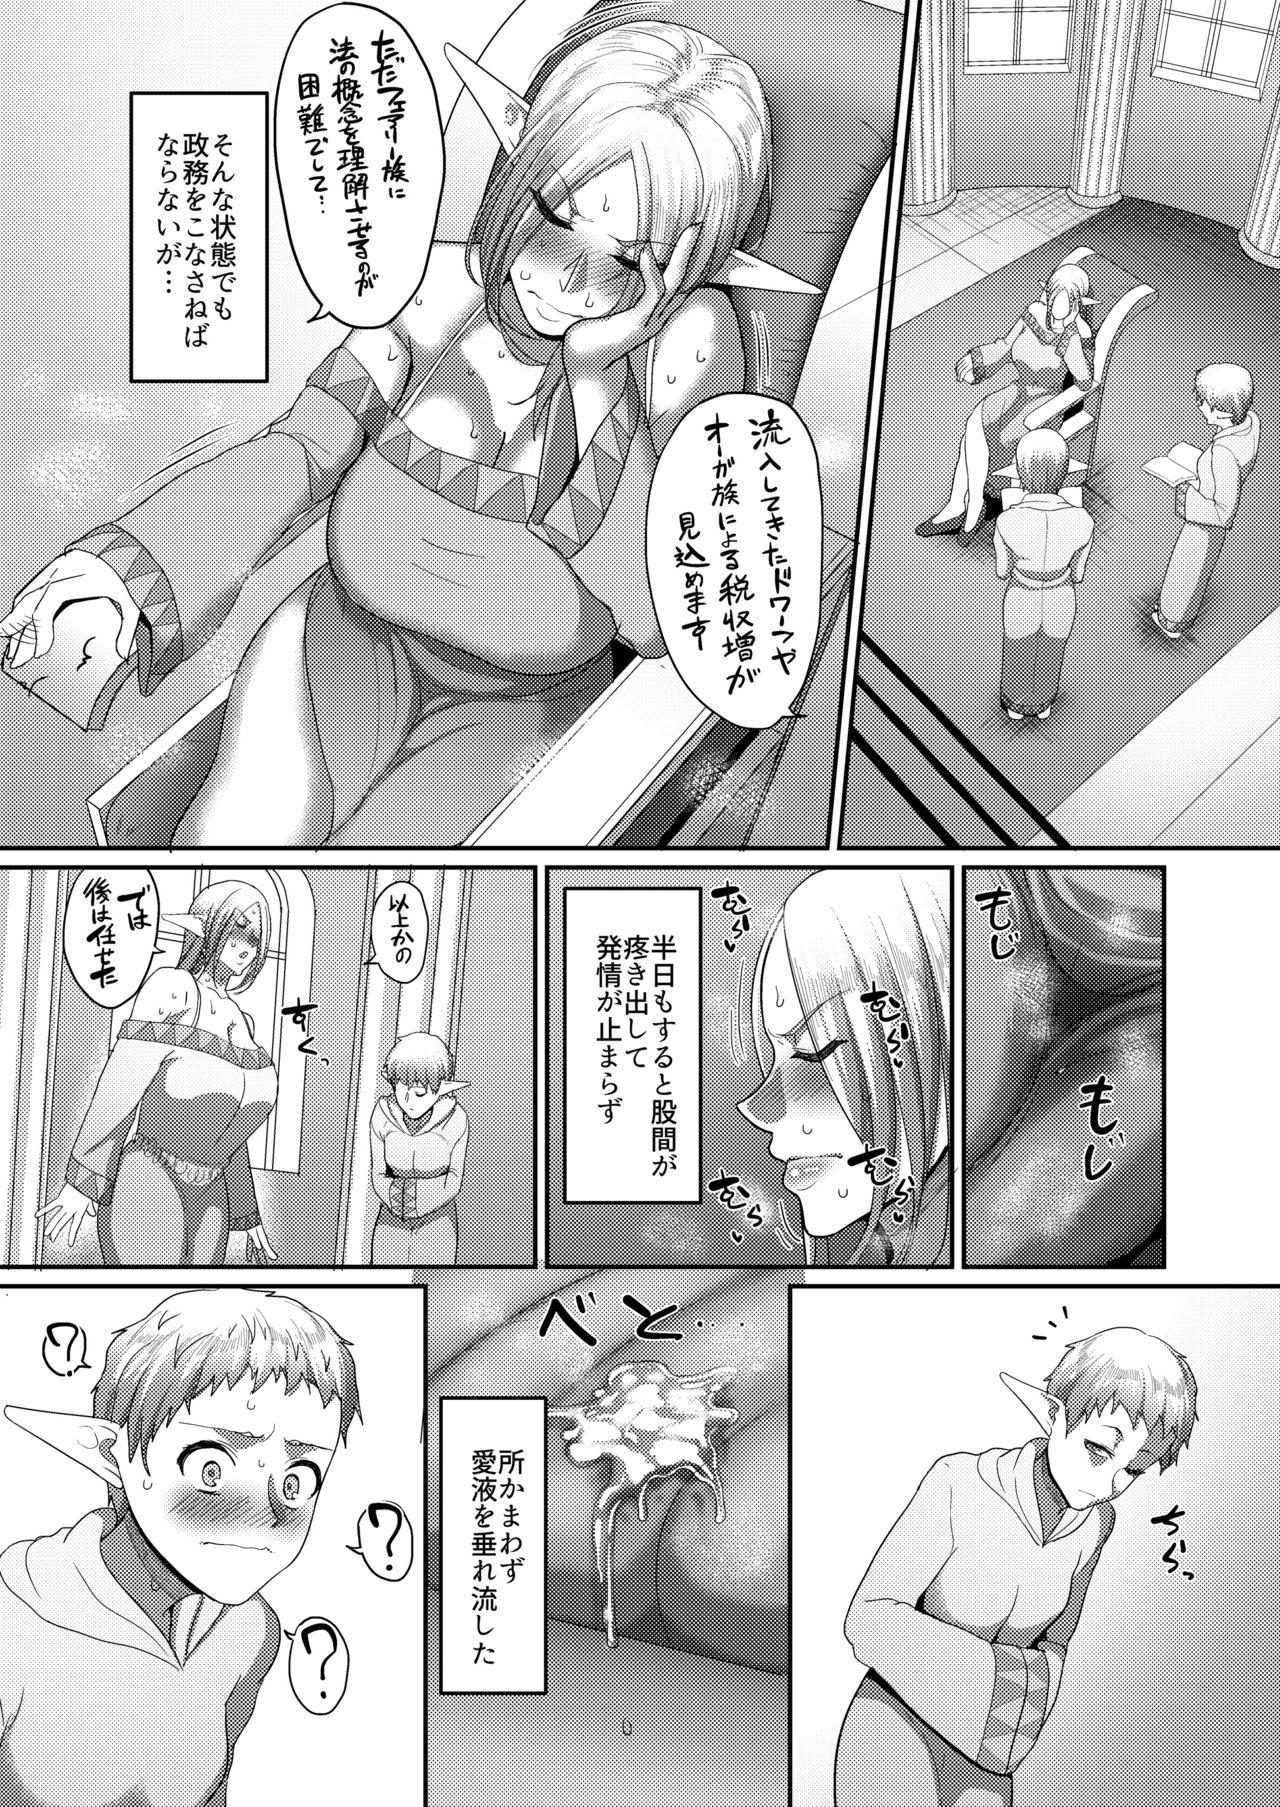 Bisex Takabisha Elf Kyousei Konin!! 4 - Original Verga - Page 6